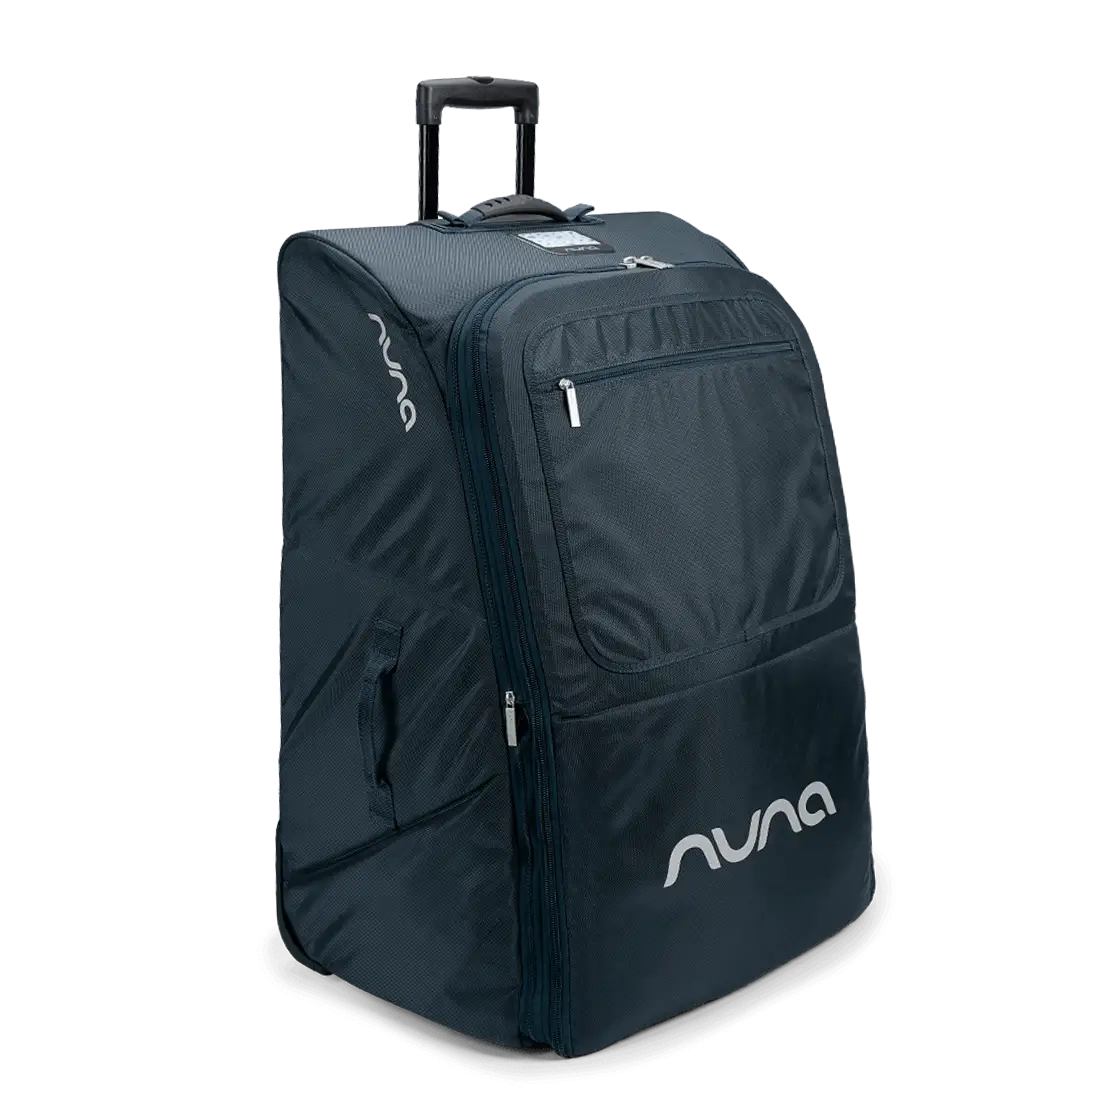 Transporttasche Nuna mit rädern